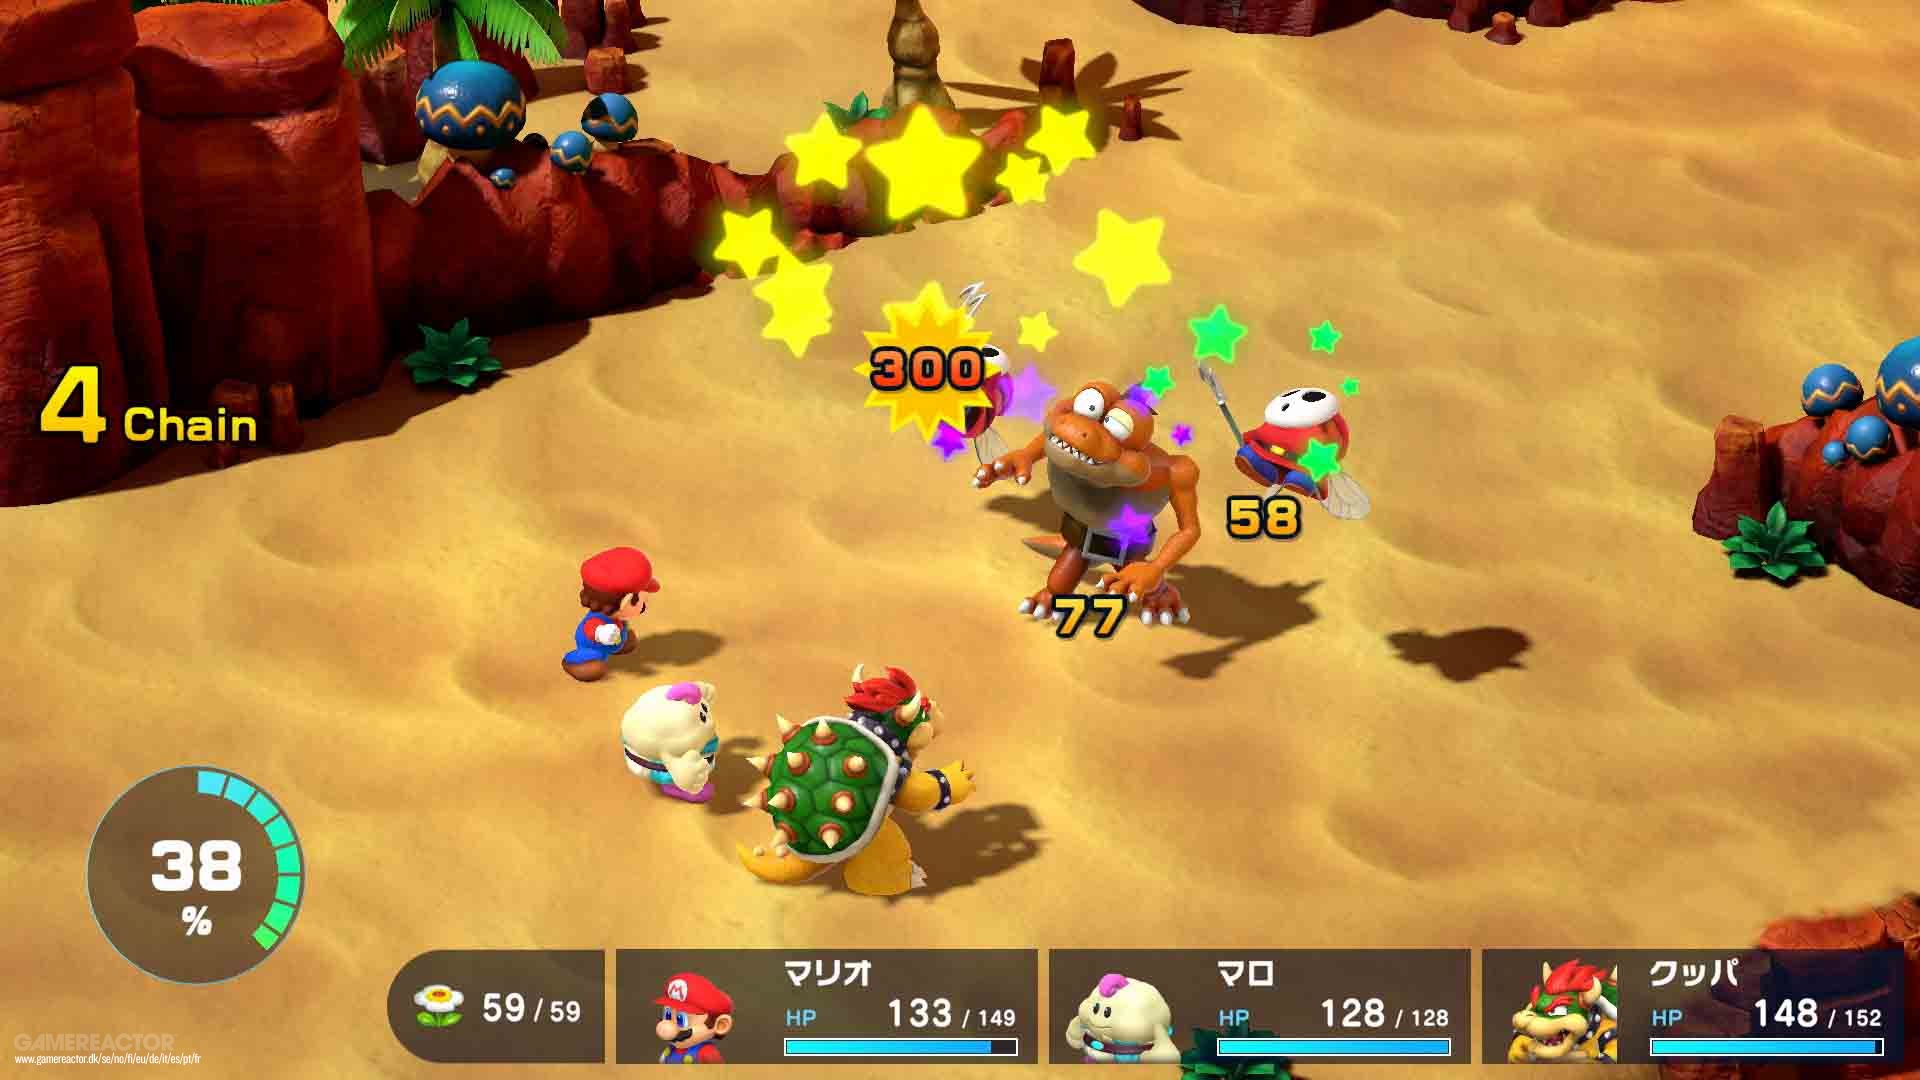 Anteprima del gioco di ruolo di Super Mario: i recenti miglioramenti alzano il livello per l’anteprima di questo amato gioco di ruolo